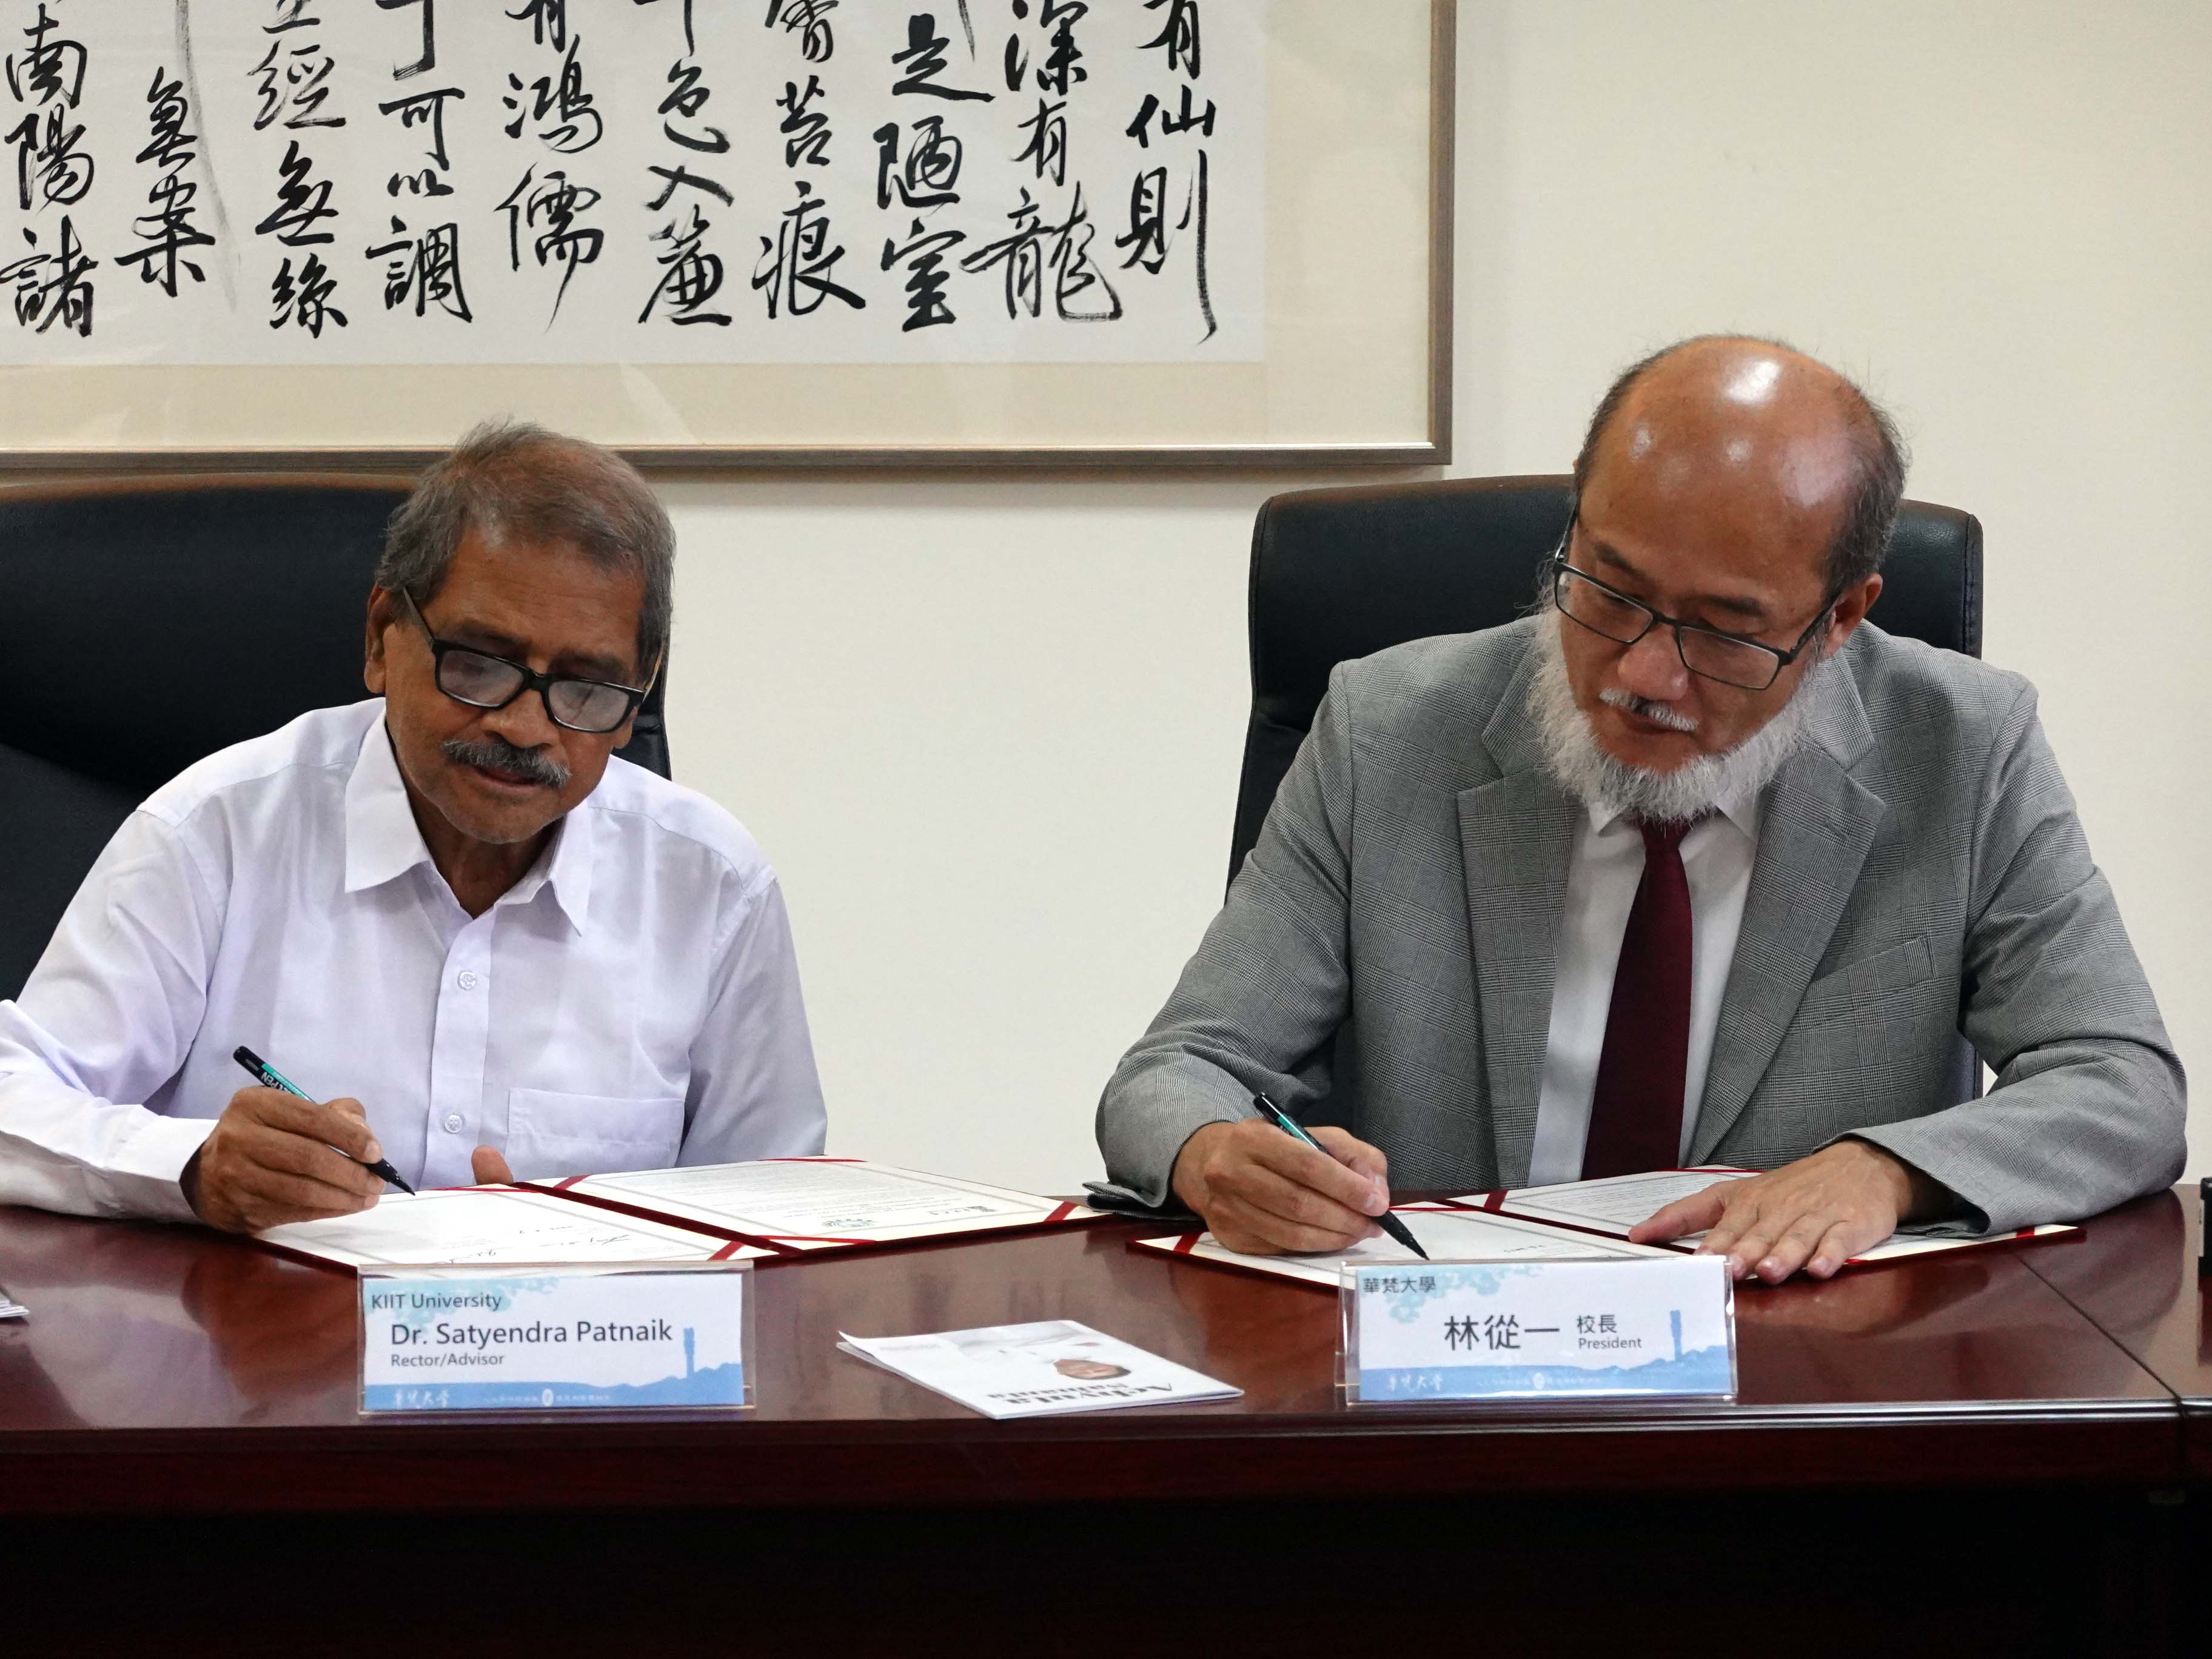 臺印交流開新頁 華梵與印度KIIT大學簽署學術合作協議